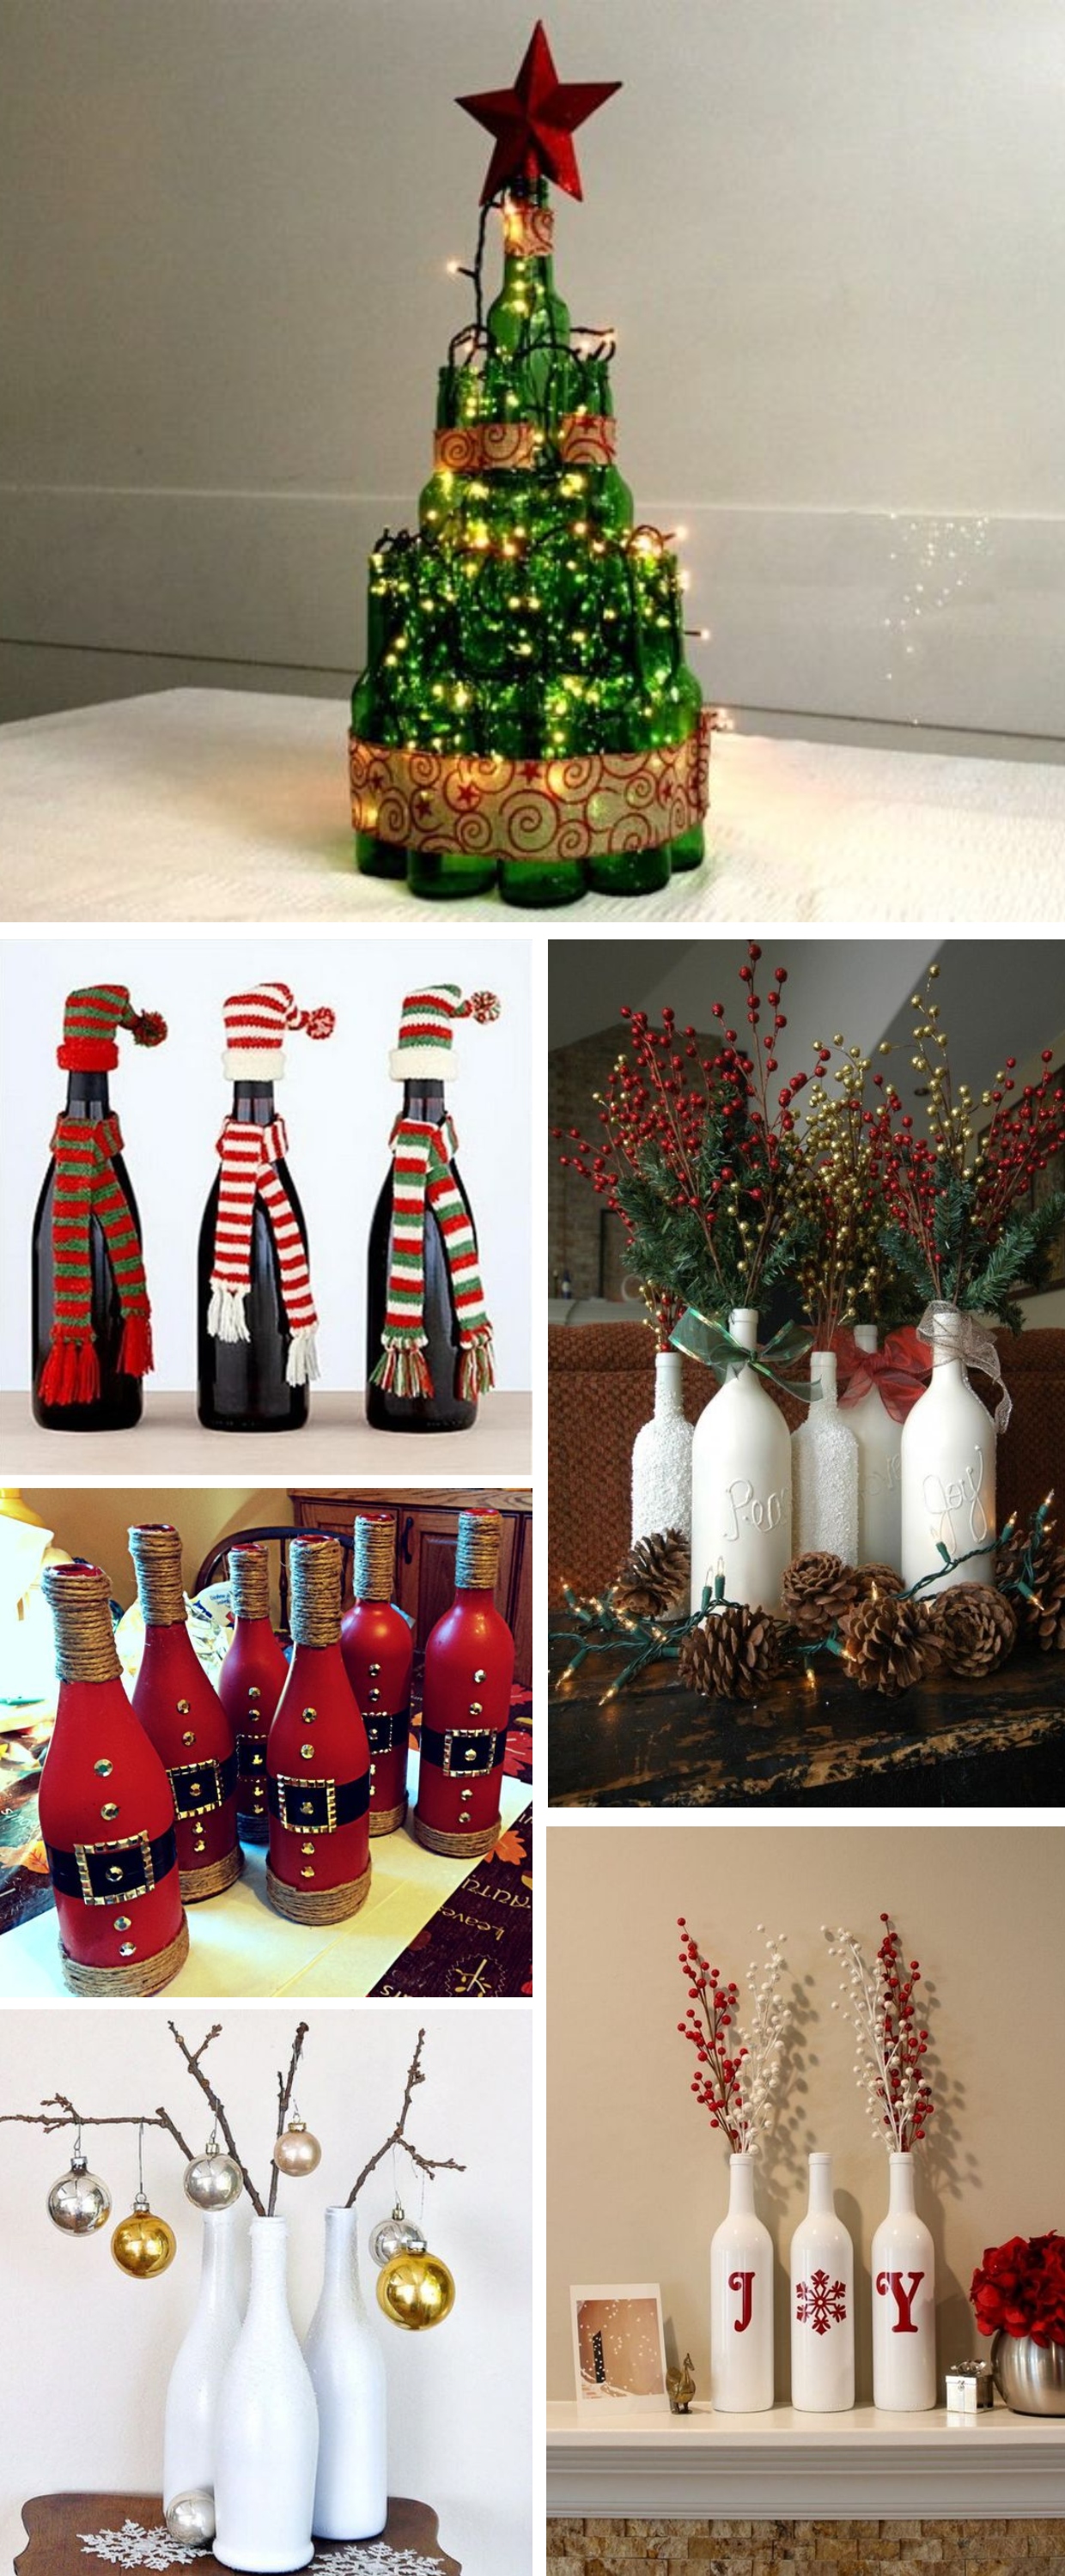 garrafas na decoração